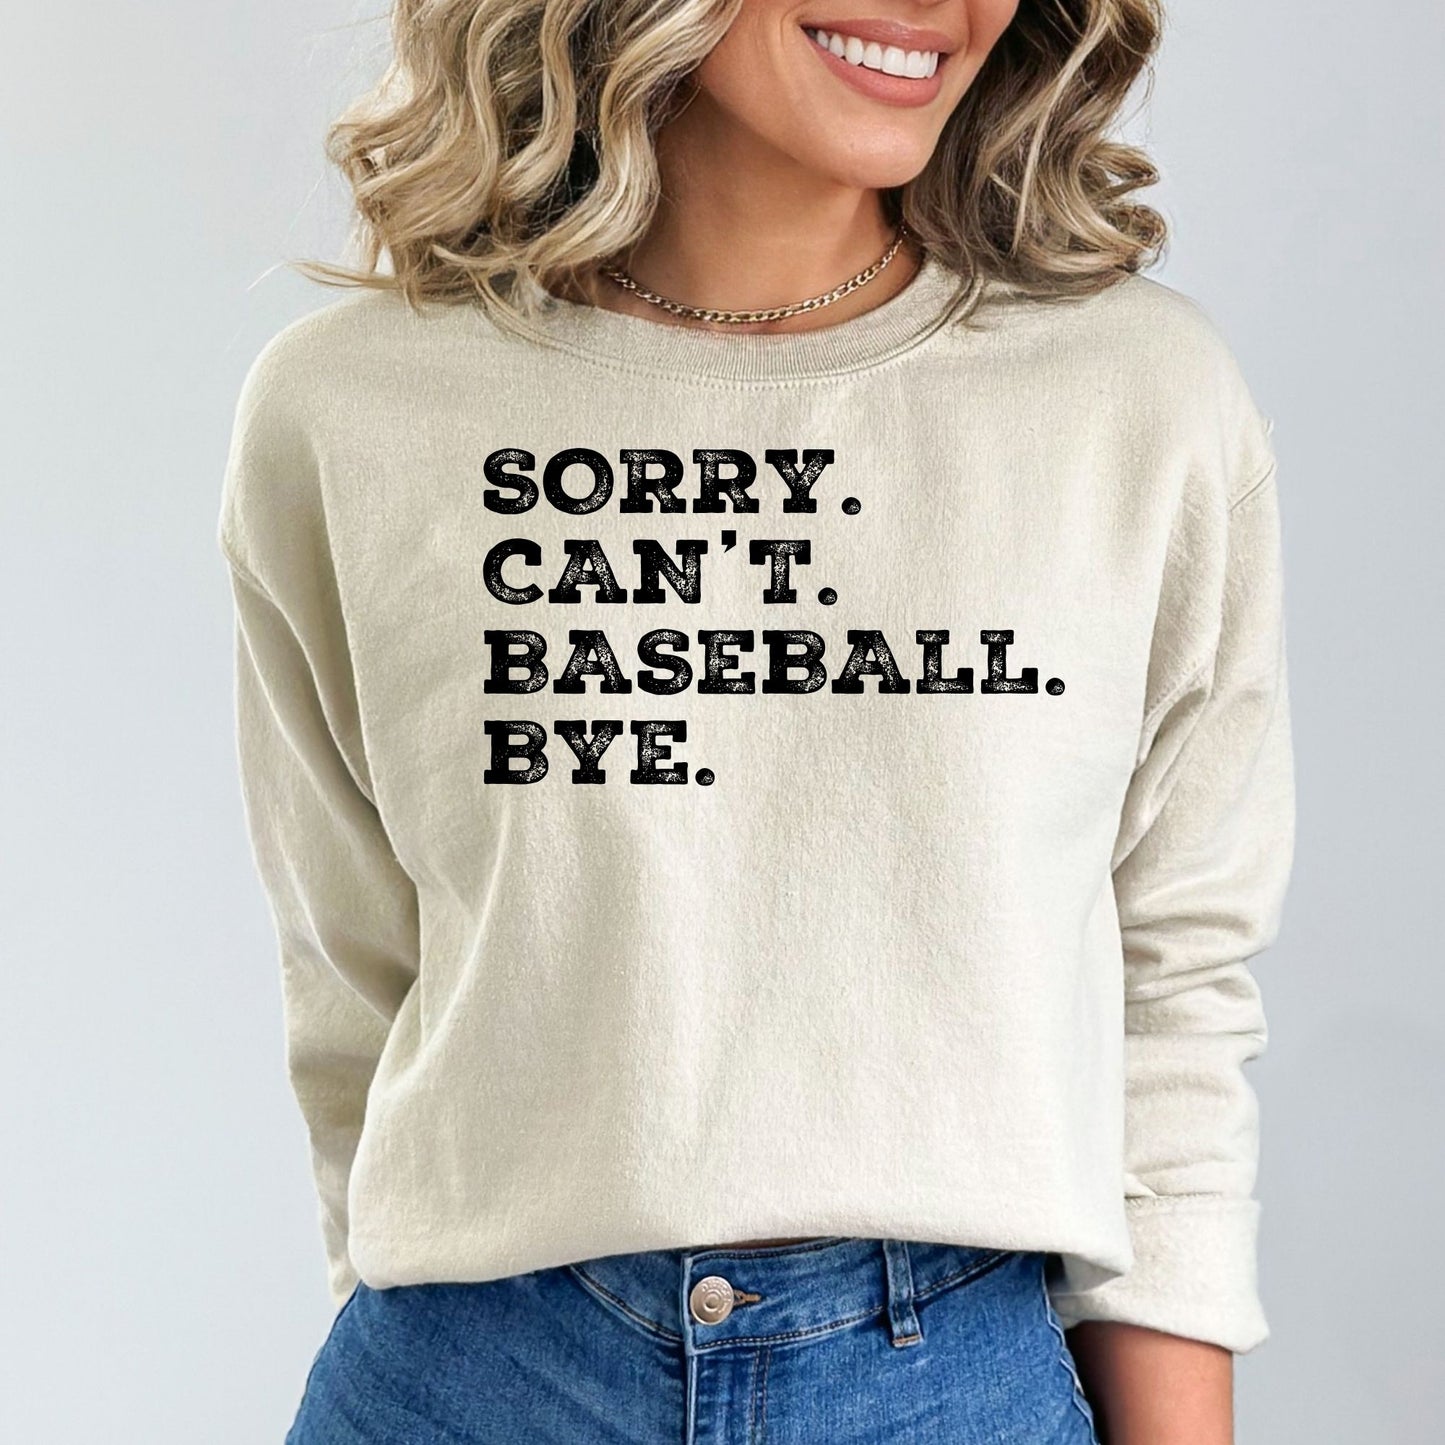 Sorry. Can't. Baseball. Bye Sweatshirt